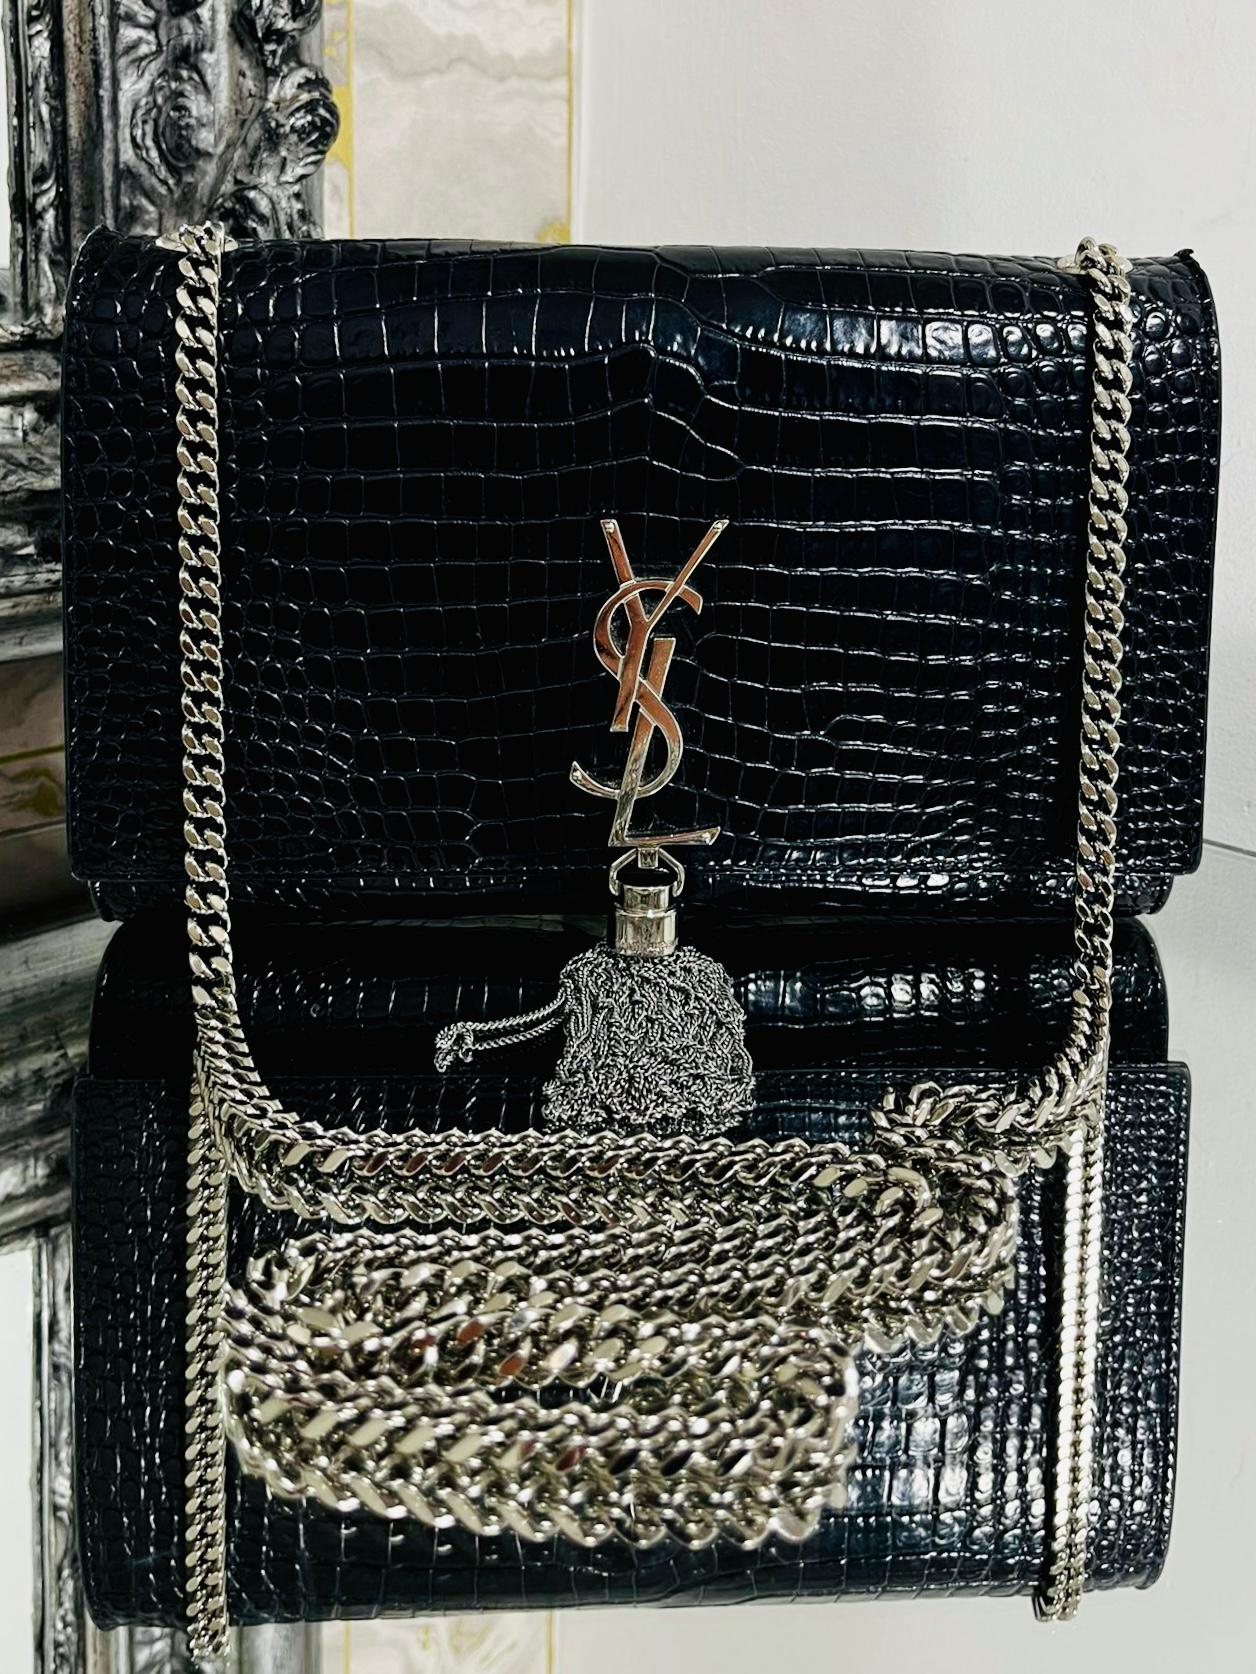 YSL Kate Tasche aus geprägtem Krokodilleder

Schwarzes, glänzendes Leder mit Krokodilprägung

und silberner Hardware. YSL